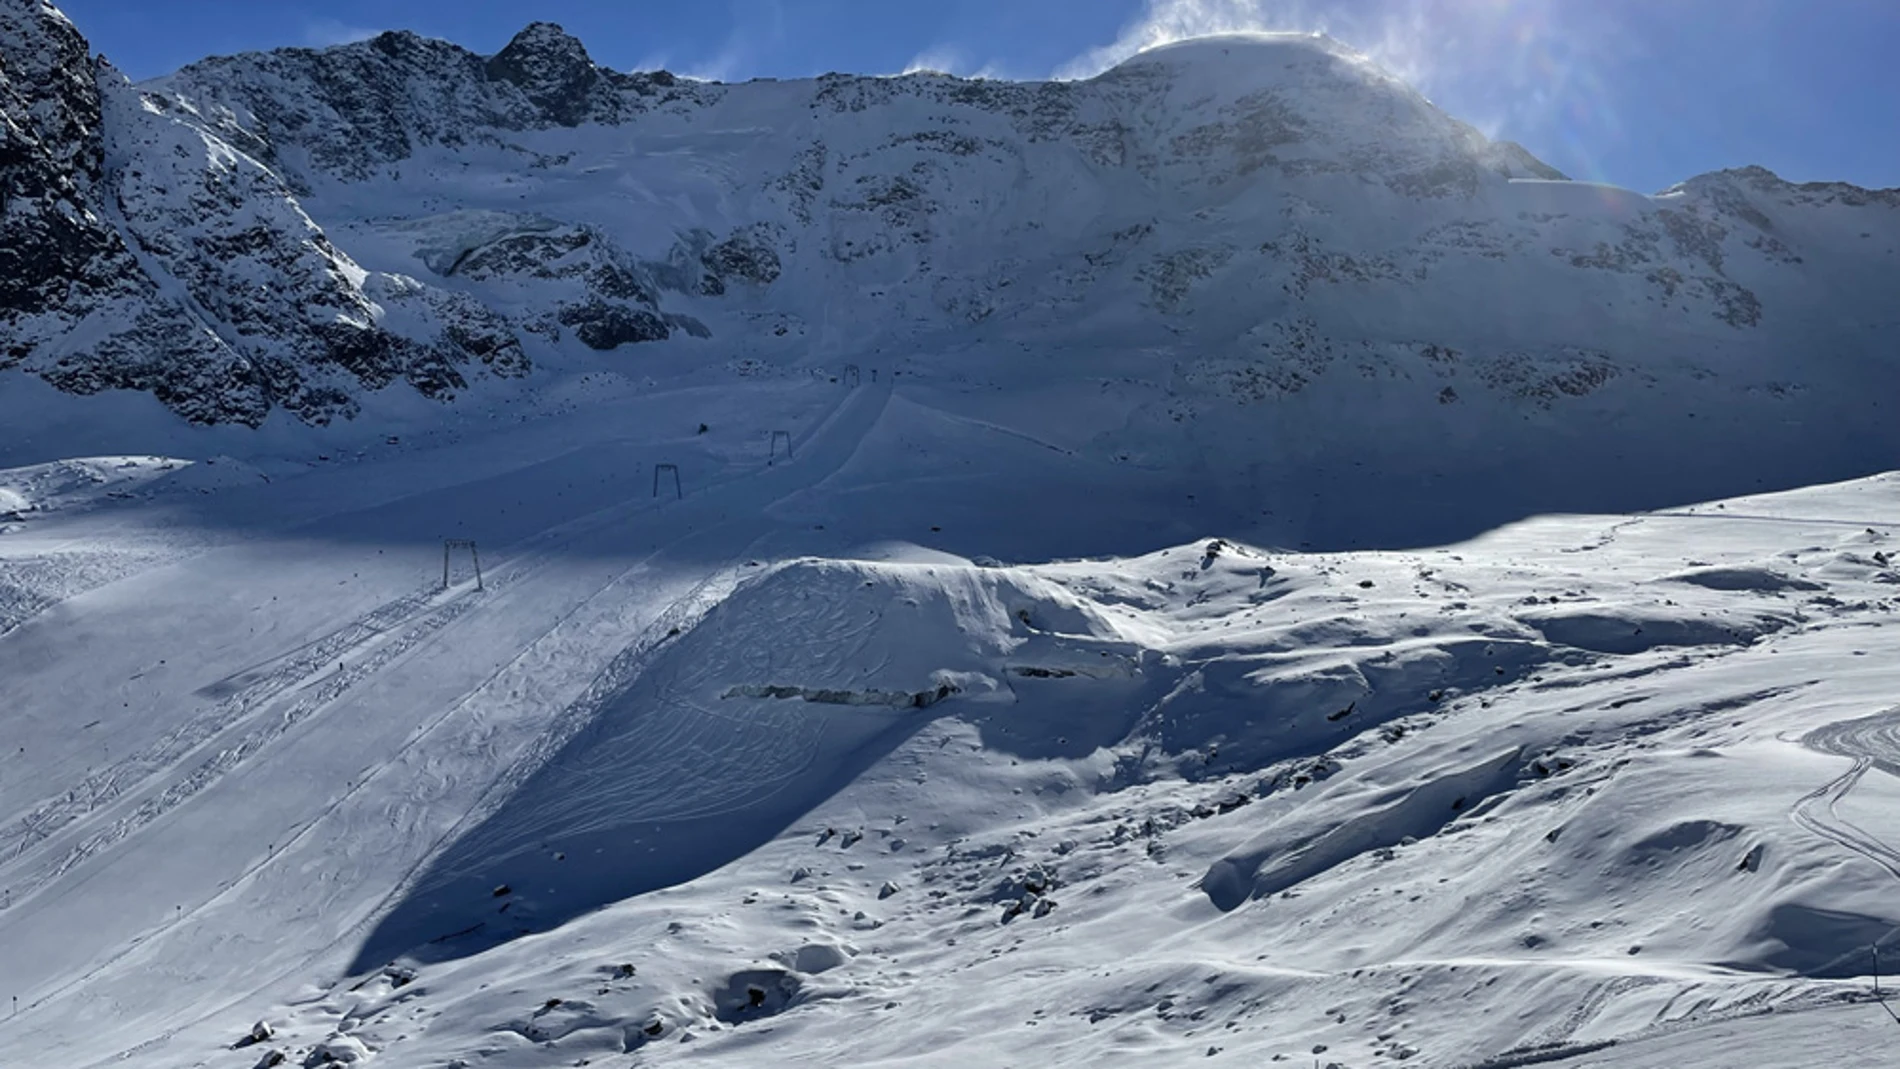 El área esquiable del glaciar de Kaunertal es una de las más altas de la zona